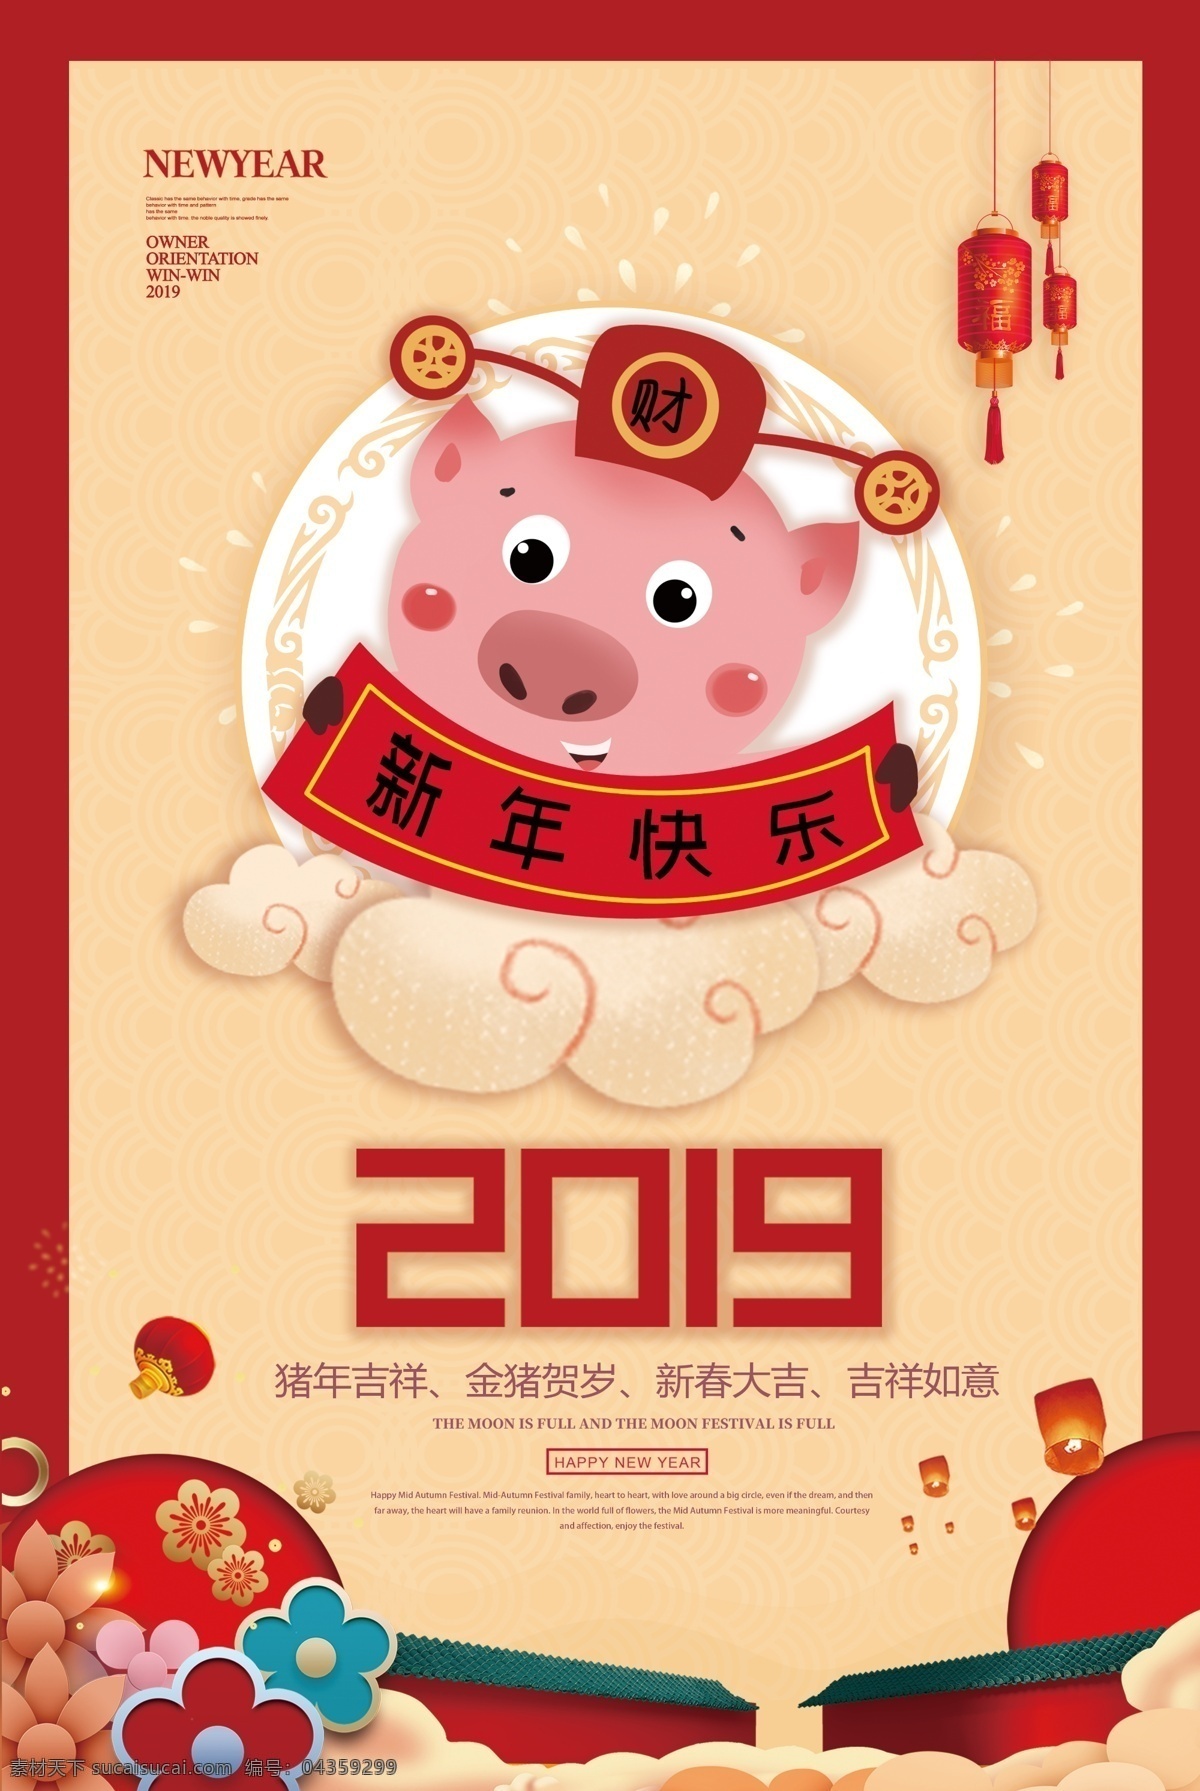 中国风 2019 新年快乐 海报 中国 风 新年 快乐 猪年大吉 猪年 猪年海报